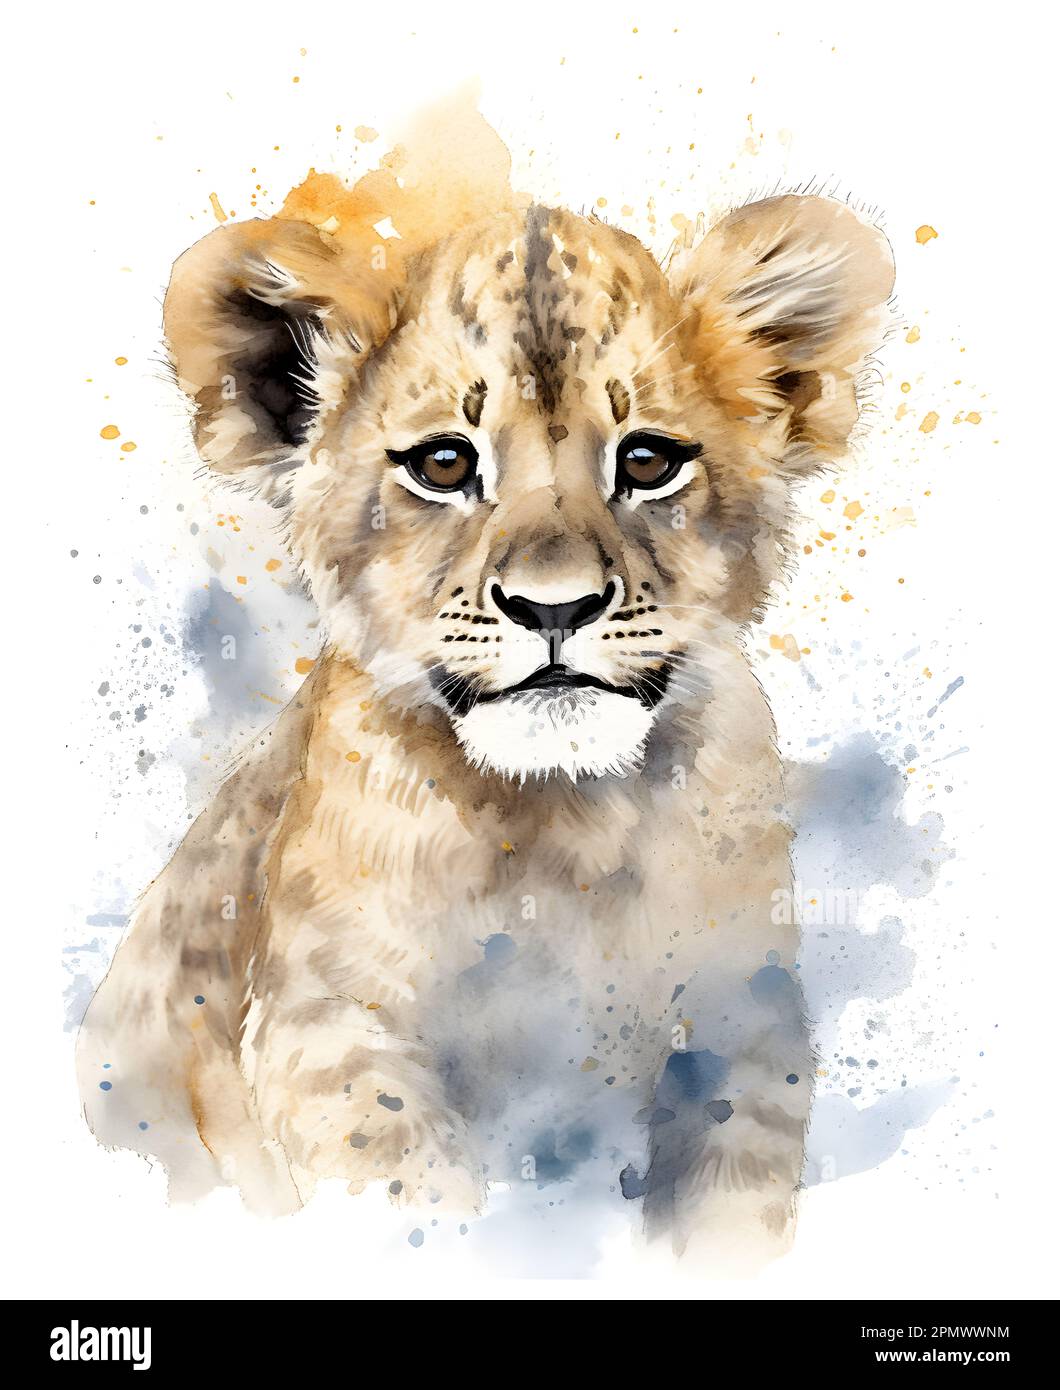 Illustration de l'aquarelle de cute lion cub. Affiche pour les enfants avec des animaux amusants et heureux. Banque D'Images